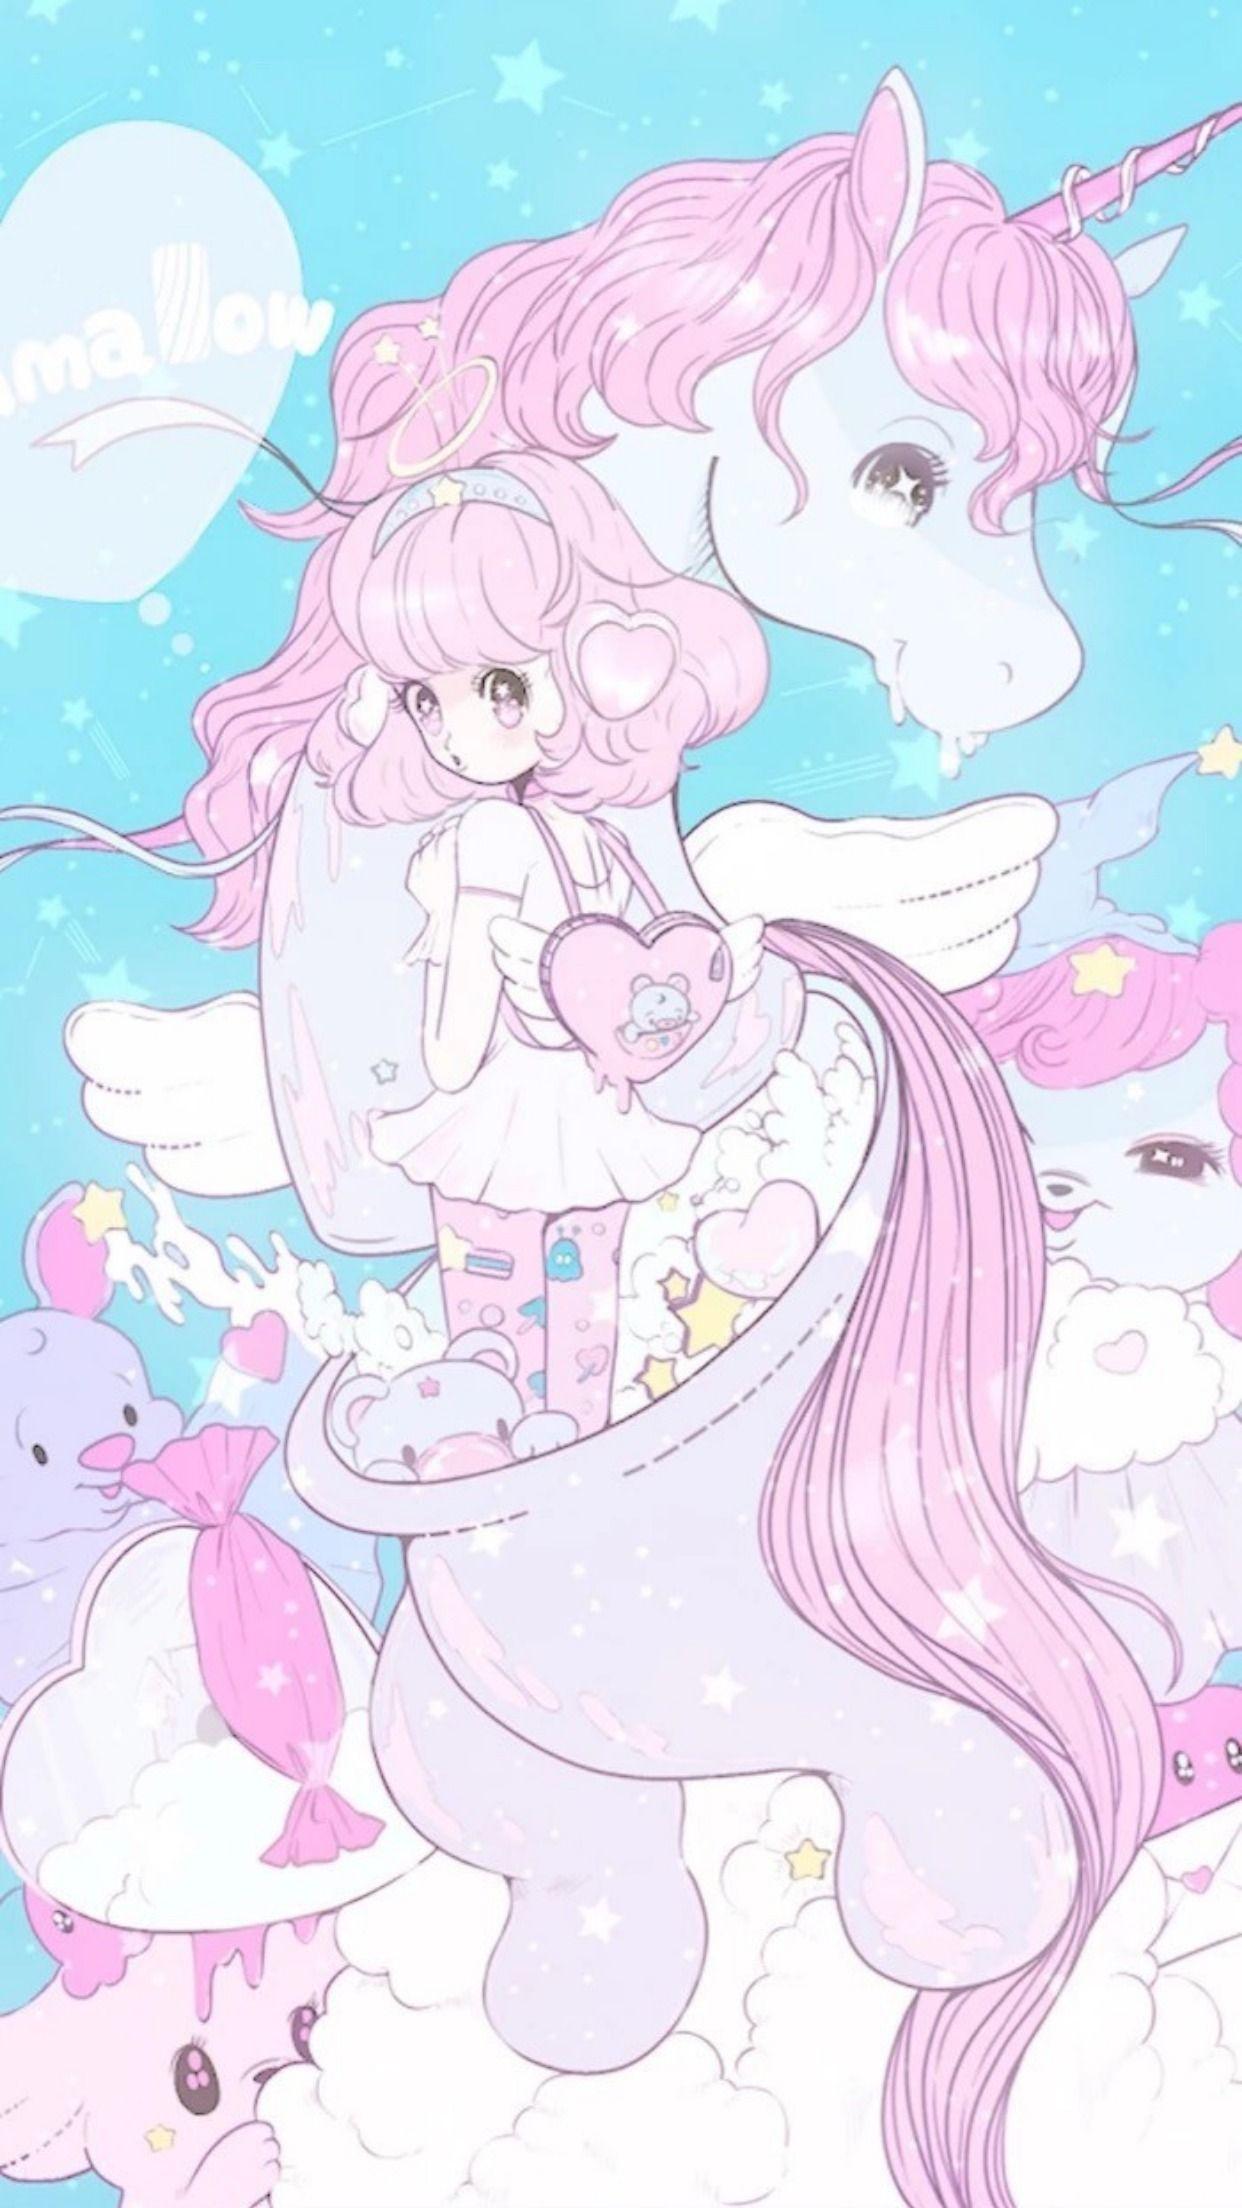 Kawaii Dark unicorn with cute eyes anime style cool hair - Anime - Sticker  | TeePublic